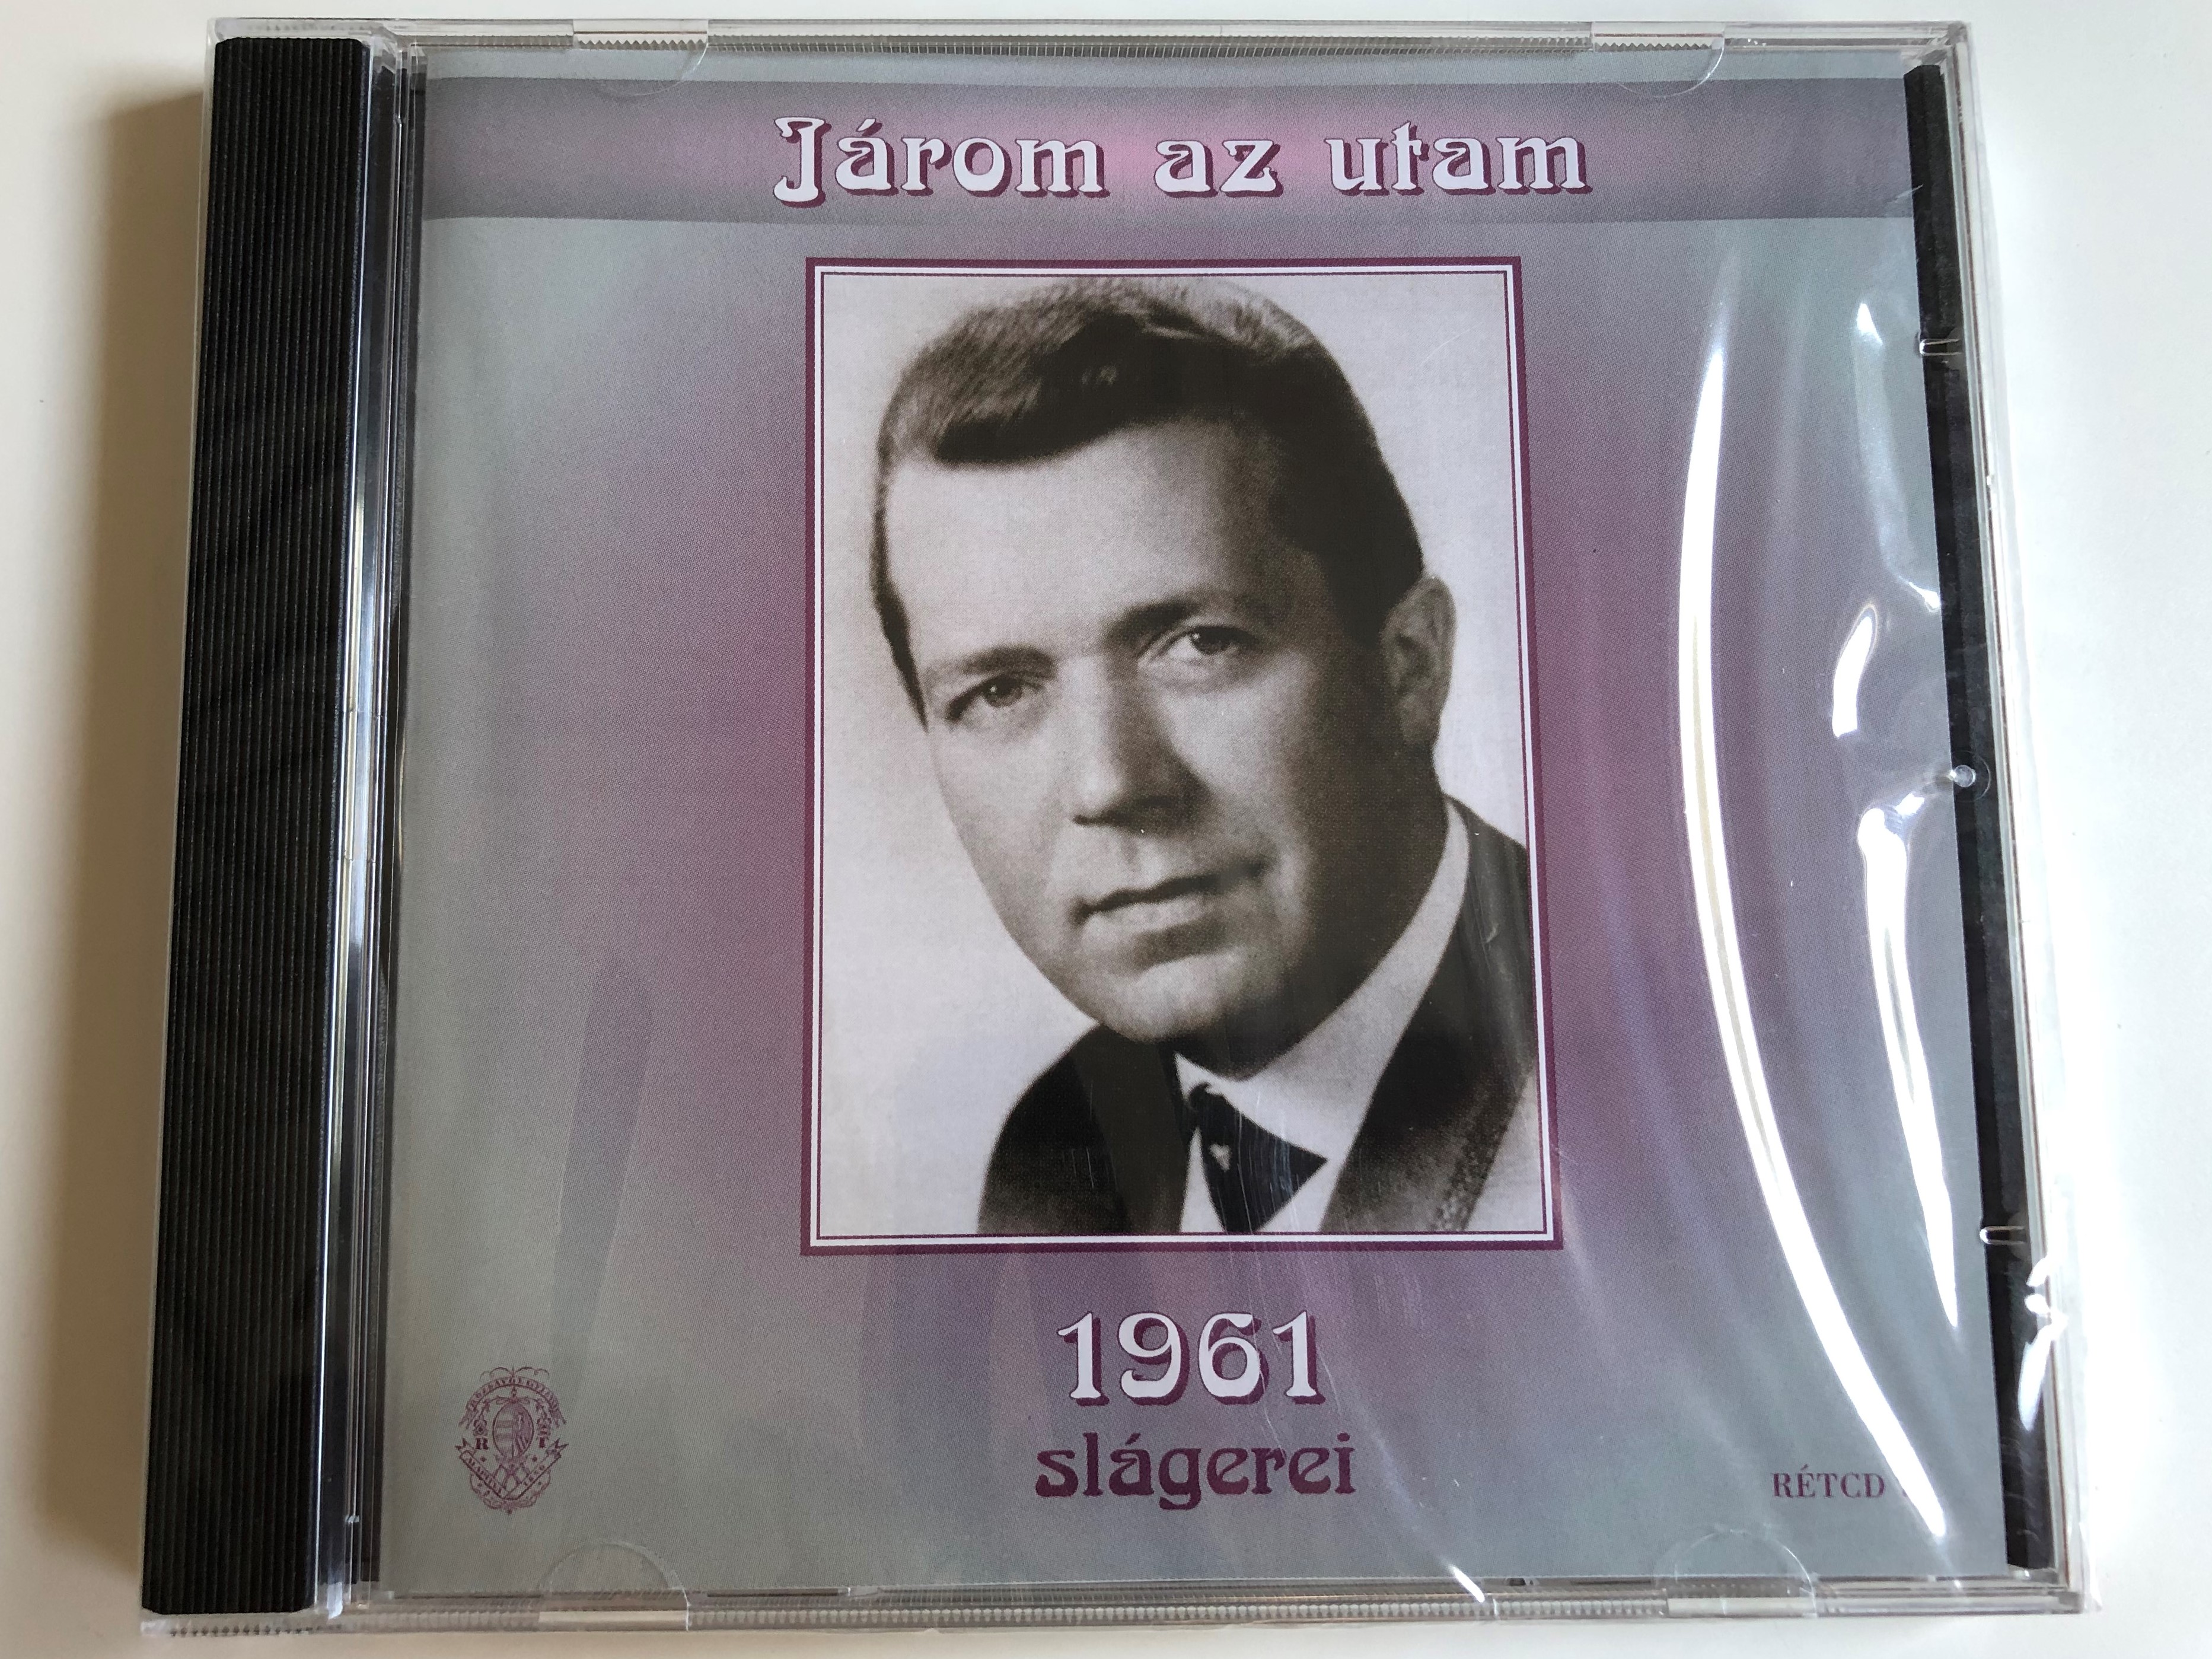 jarom-az-utam-1961-slagerei-r-zsav-lgyi-s-t-rsa-audio-cd-2011-r-tcd-72-1-.jpg